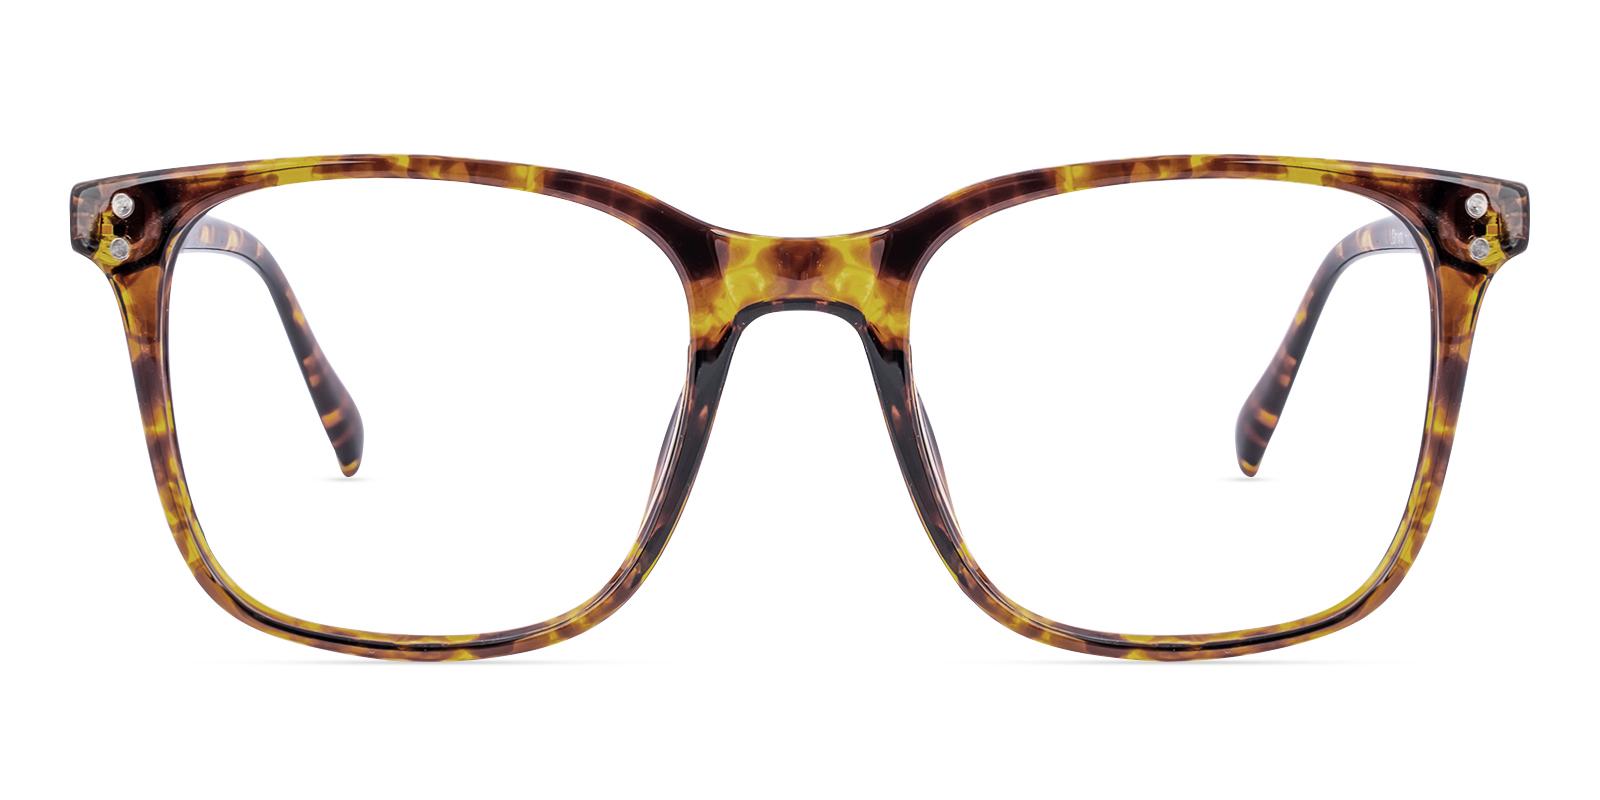 Clinoster Tortoise Plastic Eyeglasses , UniversalBridgeFit Frames from ABBE Glasses